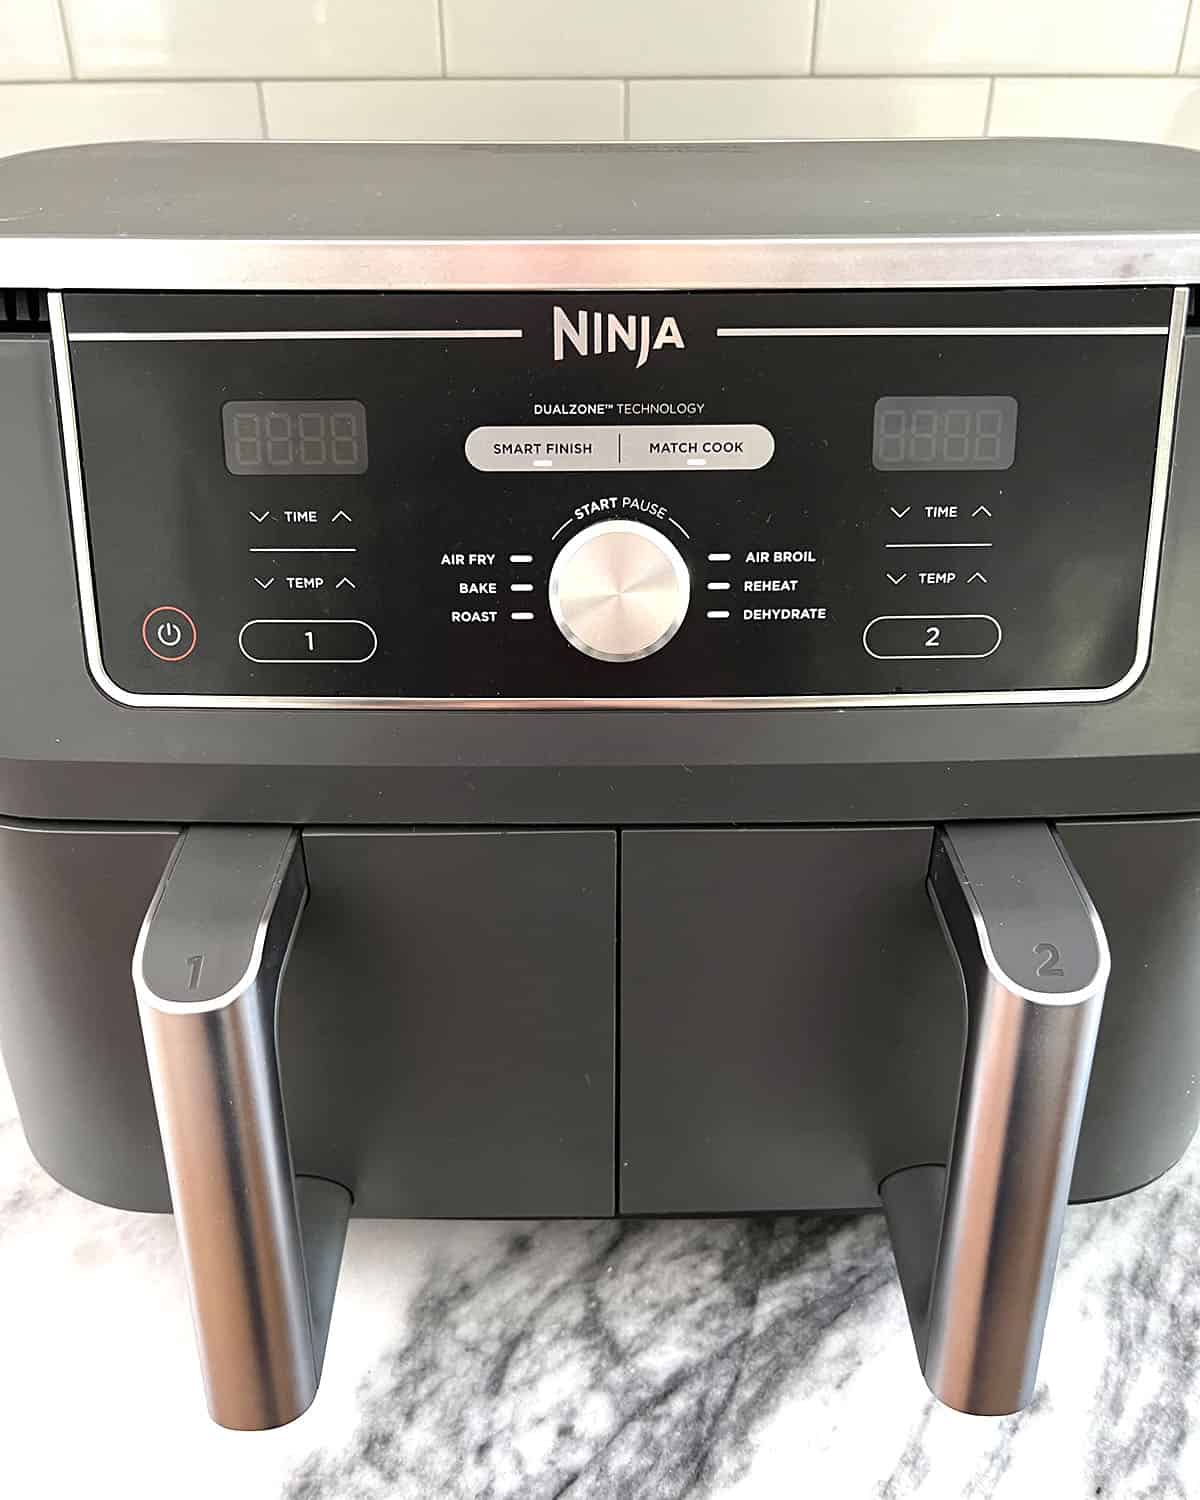 Ninja Foodi Dual Zone Air Fryer.